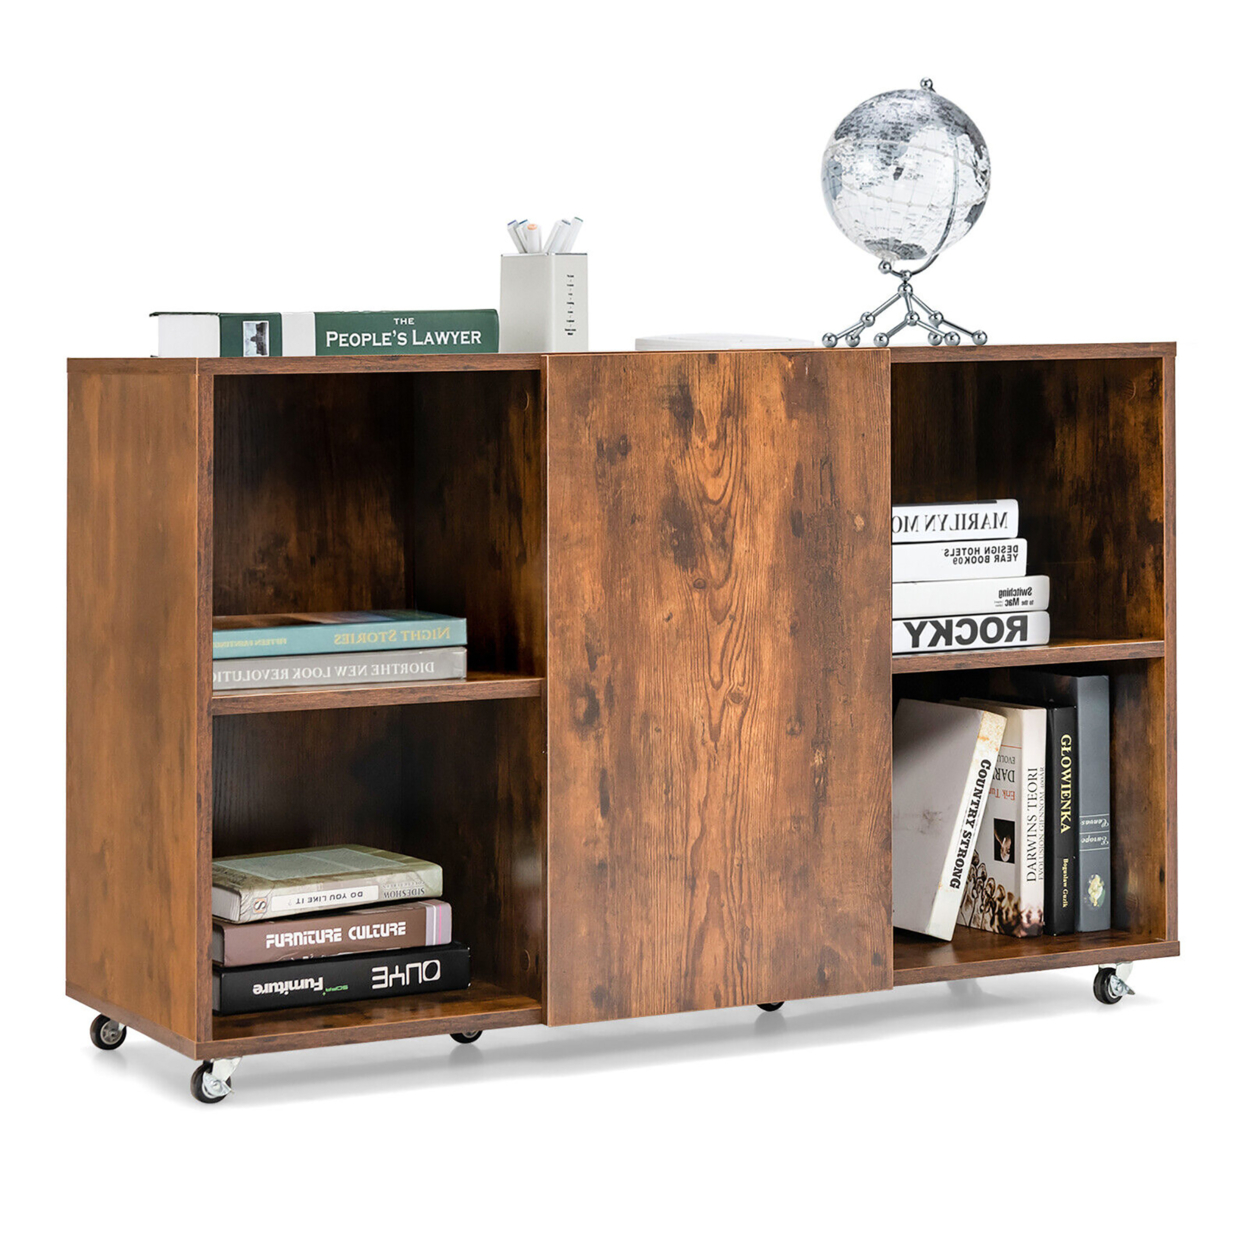 3-Tier Wood Bookcase 6 Cube Bookshelf W/ Door Wheels Display Cabinet - Rustic Brown